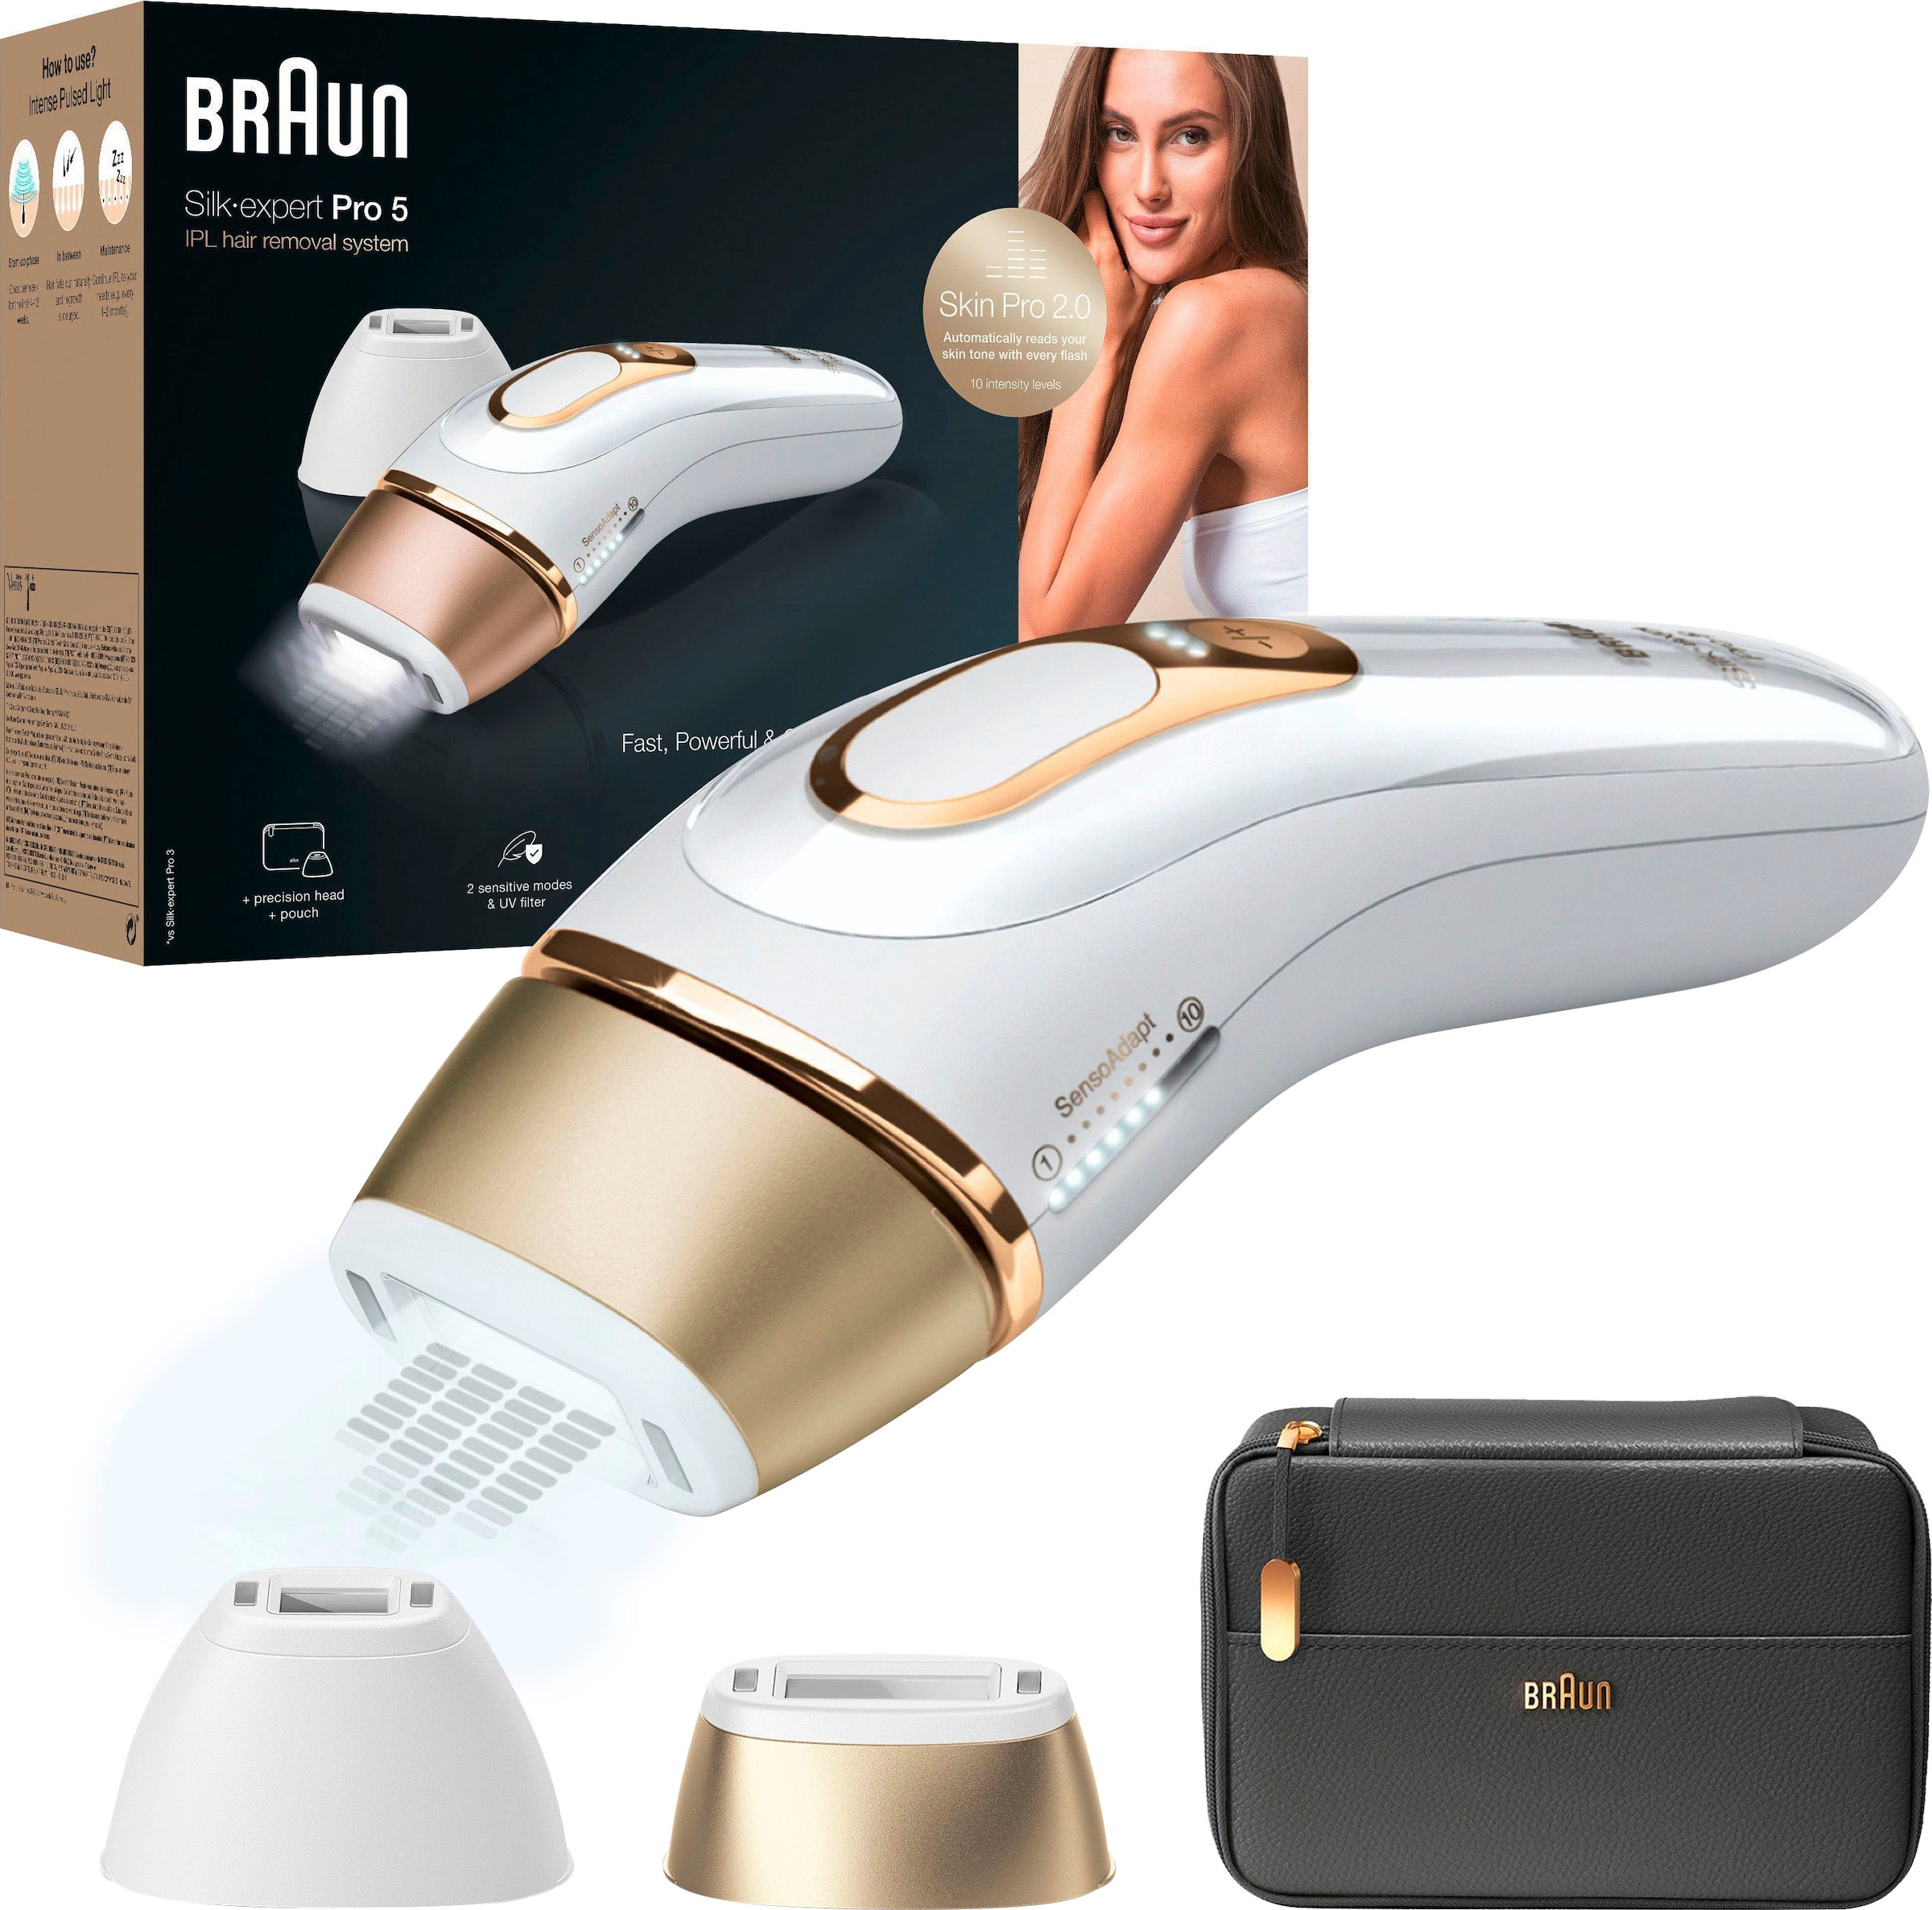 Braun IPL-Haarentferner »Silk-expert Pro IPL PL5140«, 400.000 Lichtimpulse,  Skin Pro 2.0 Sensor mit 3 Jahren XXL Garantie